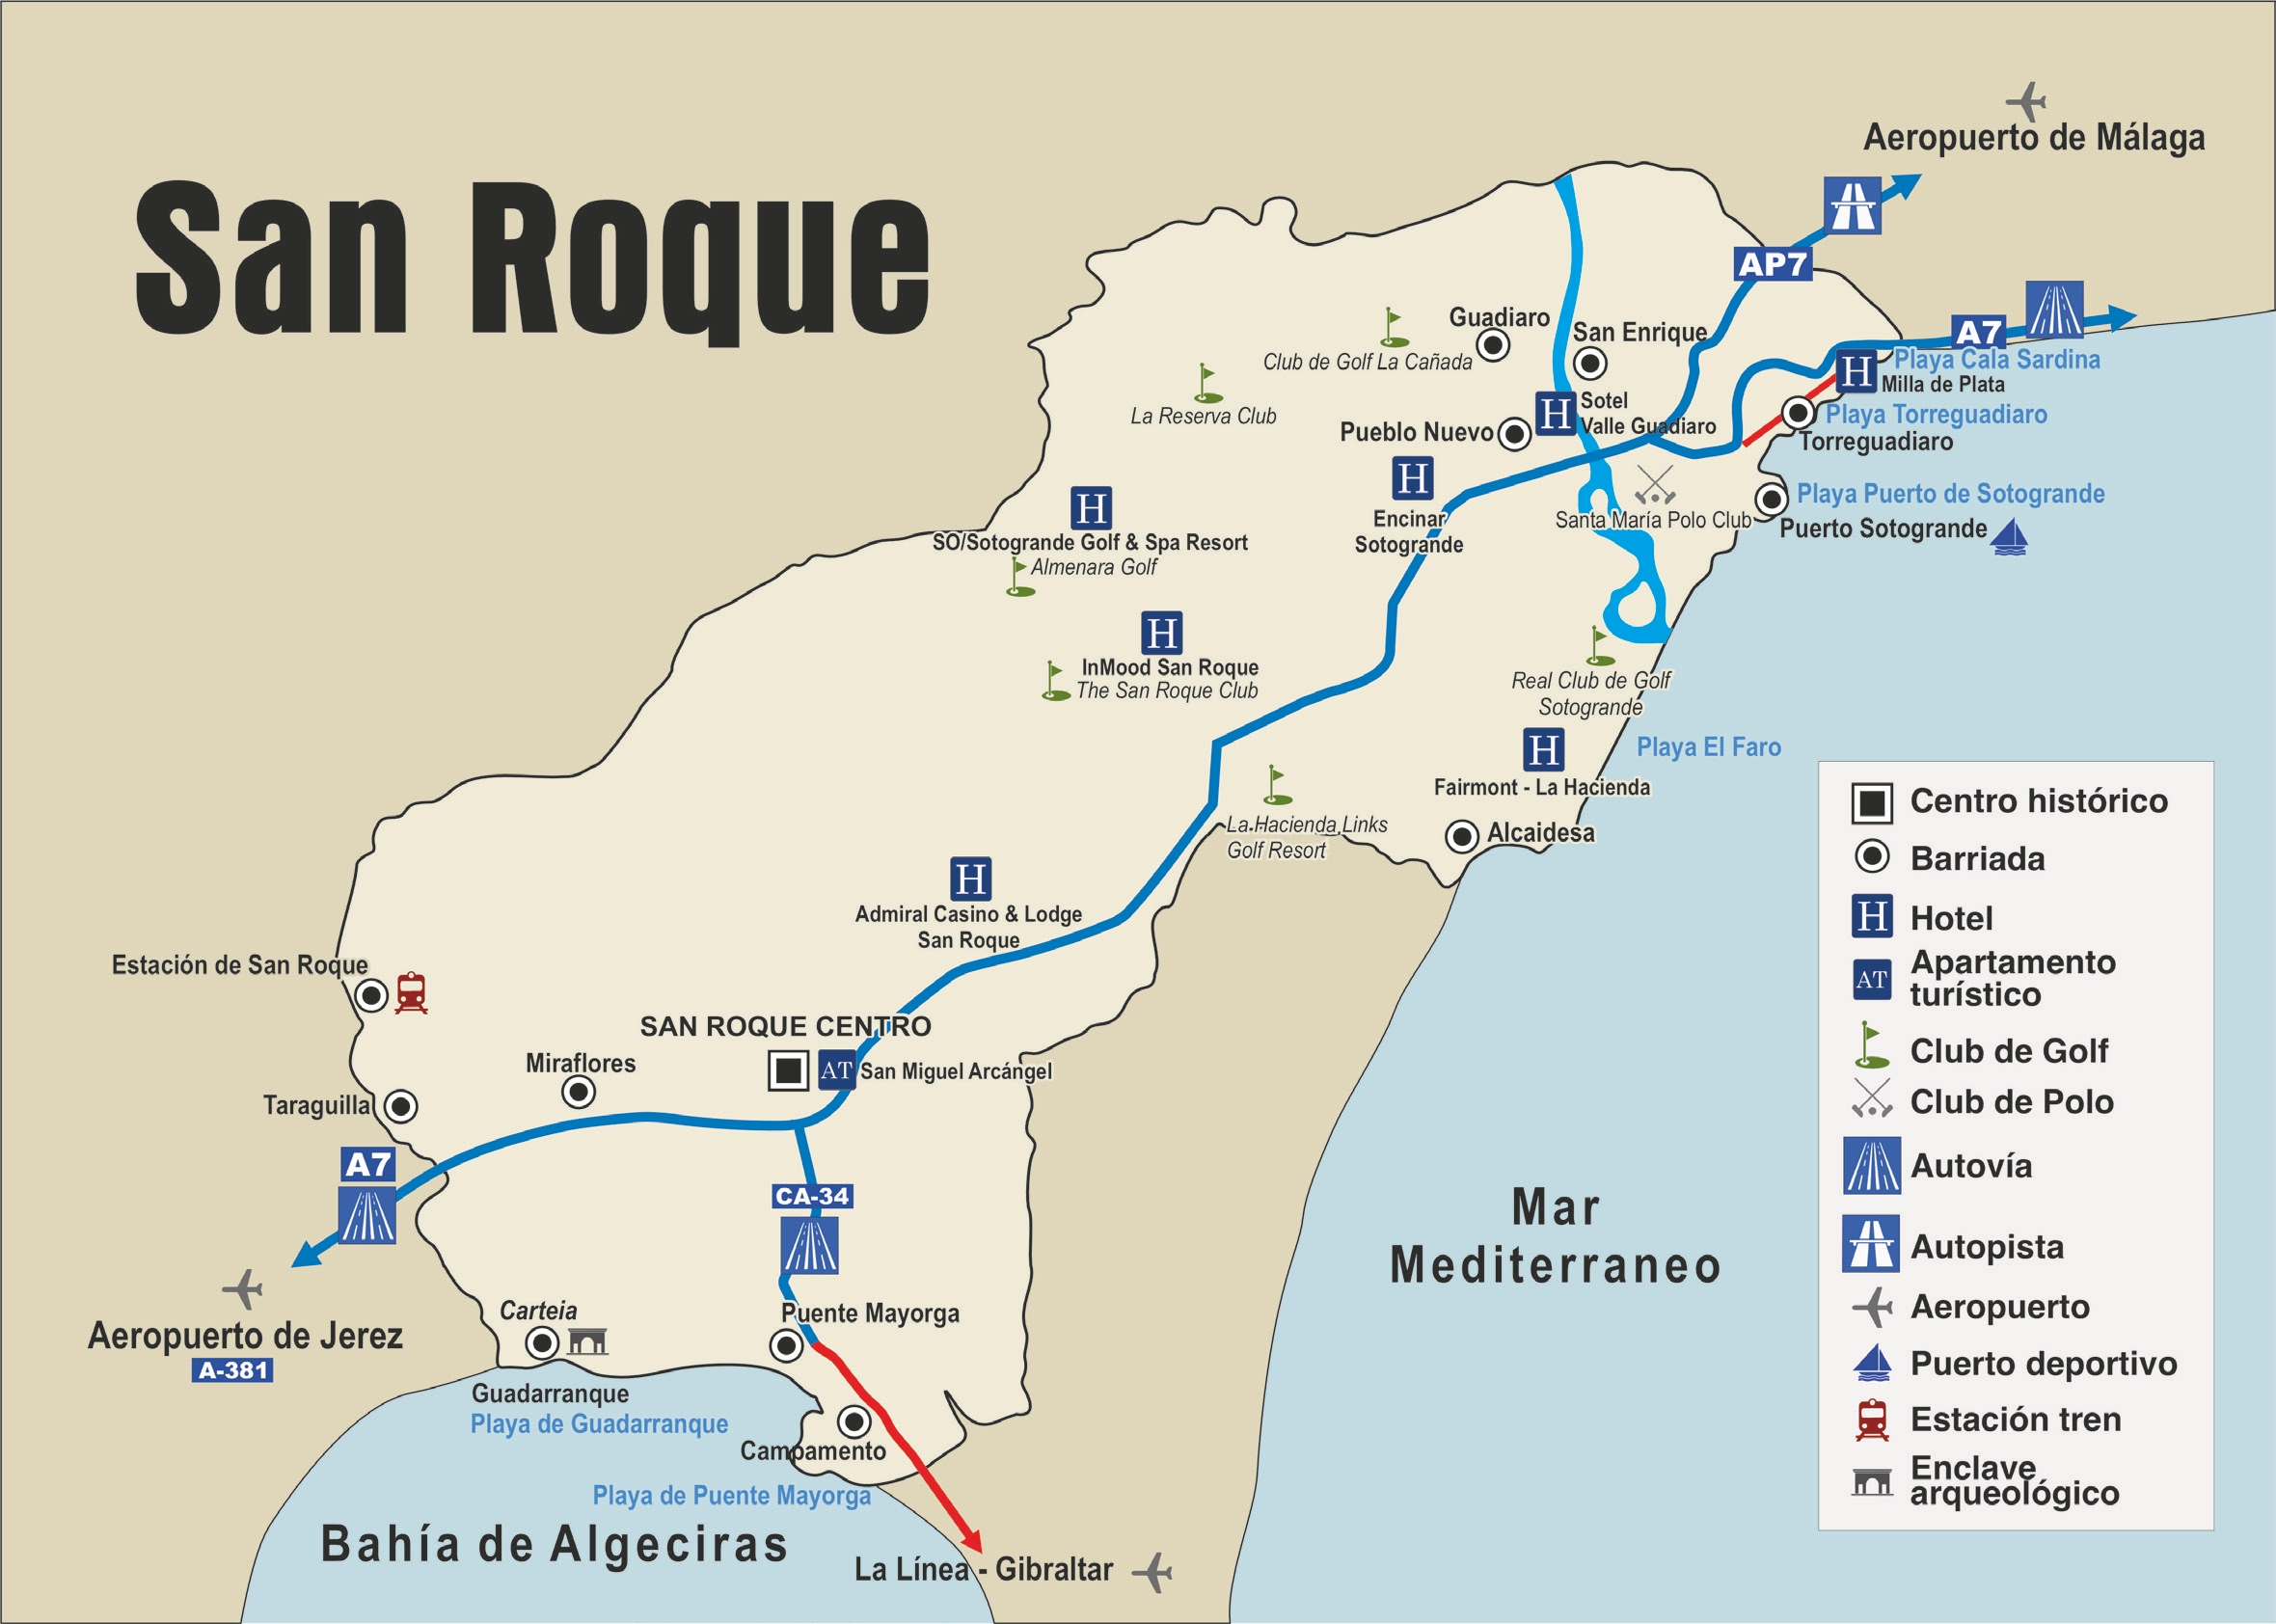 Mapa esquemático de la ubicación de San Roque dentro de la comarca de Campo de Gibraltar señalando los diferentes puntos de interés